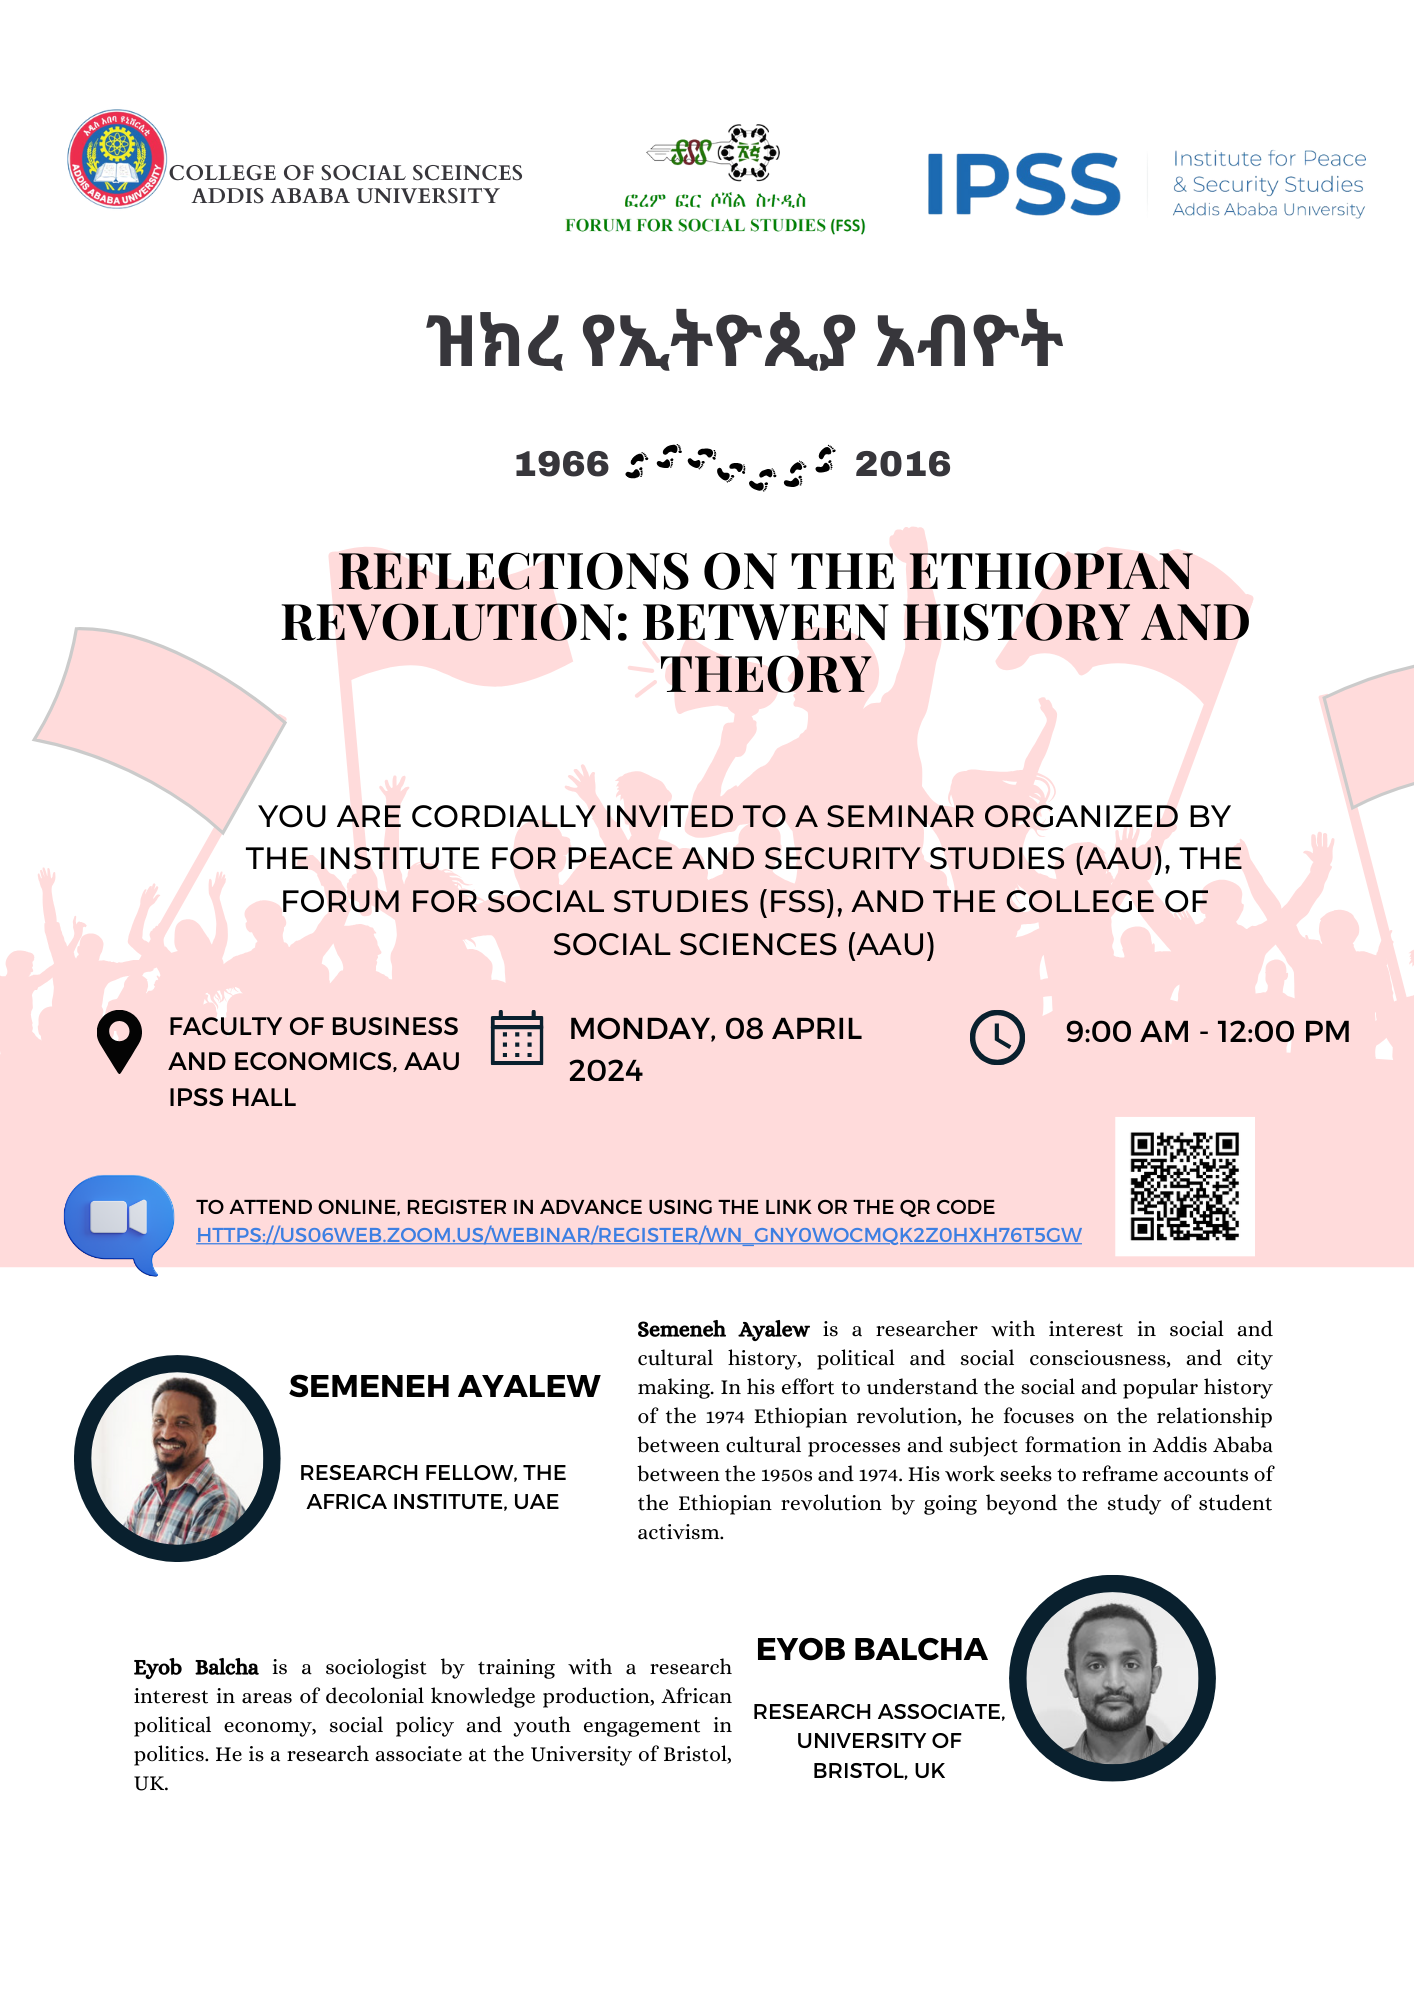 Invitation for a Seminar on Ethiopian Revolution